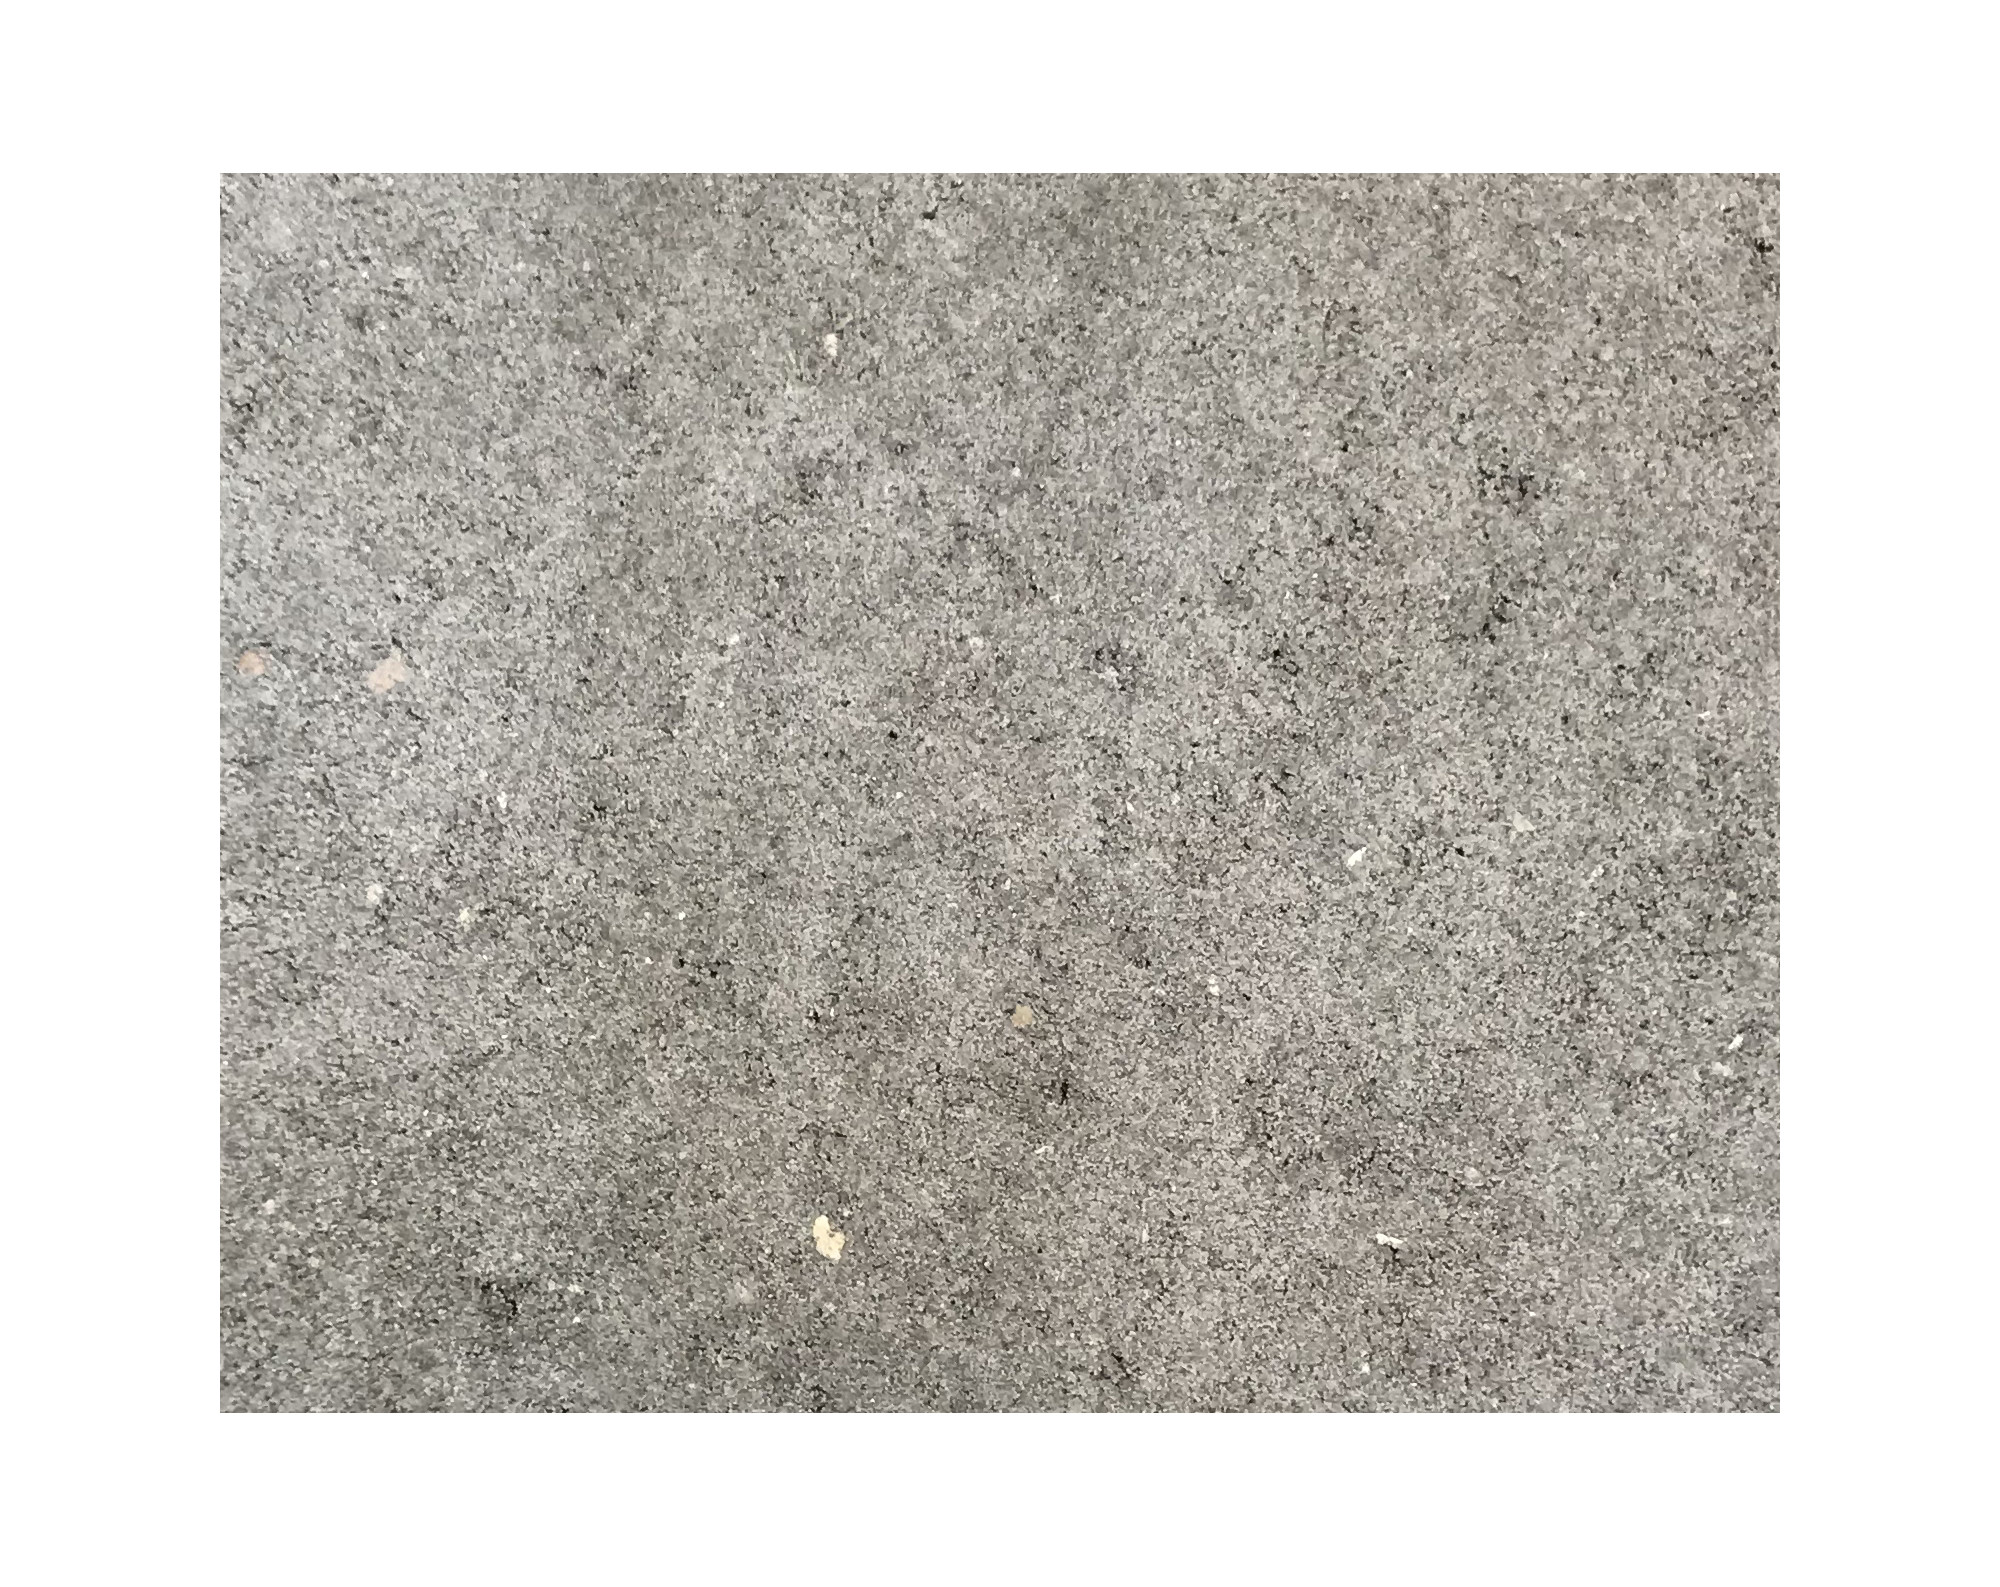 Harmo roc athenset, rustica-serie, rechthoekig afmetingen 3,00mx6,00m, grijs, beton